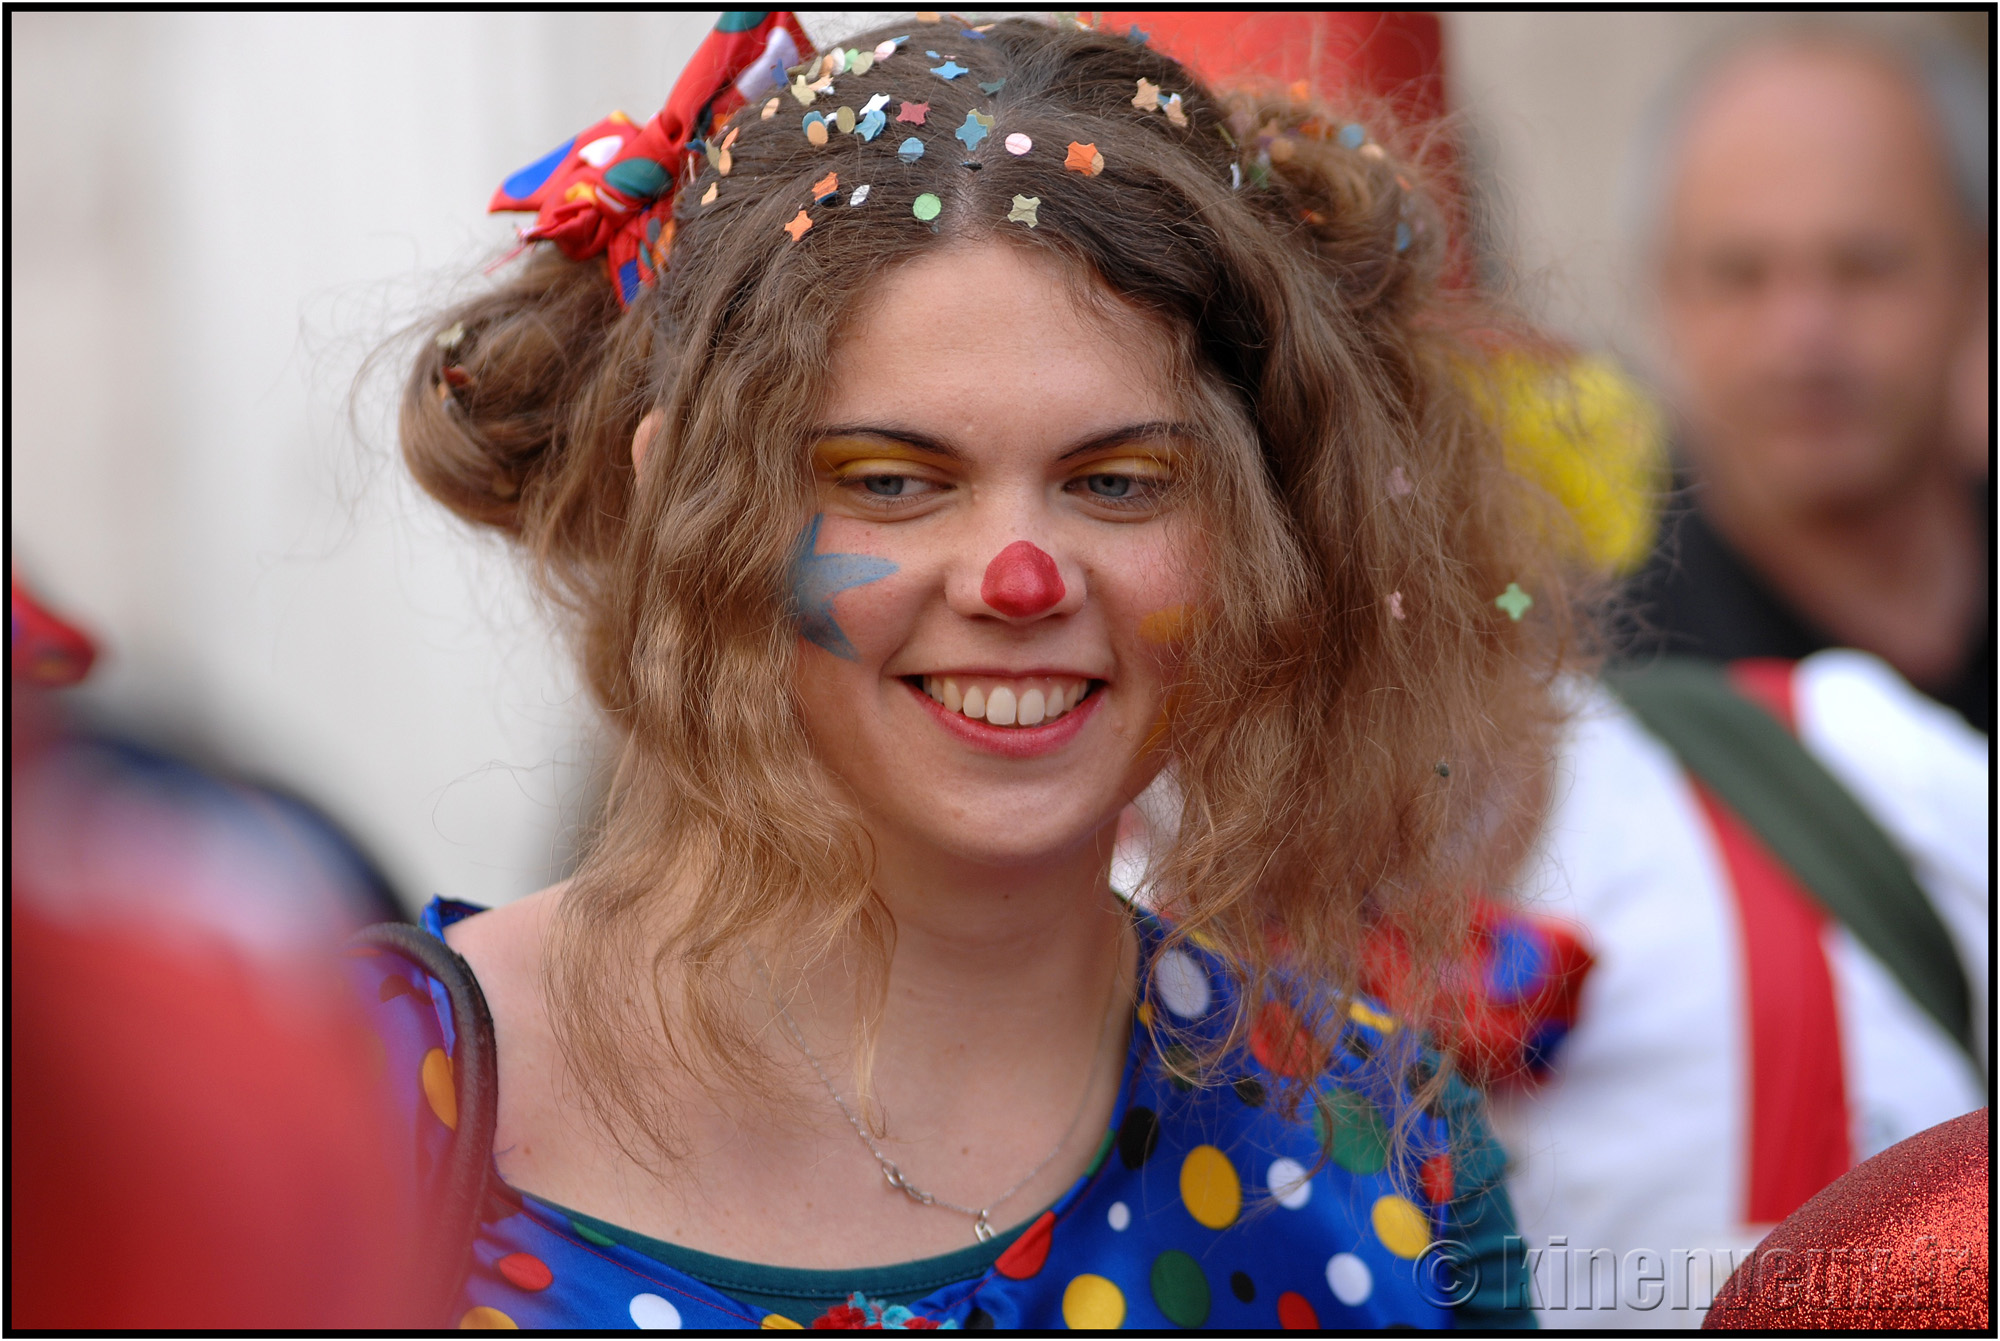 kinenveux_80_carnaval2015lr.jpg - Carnaval des Enfants 2015 - La Rochelle